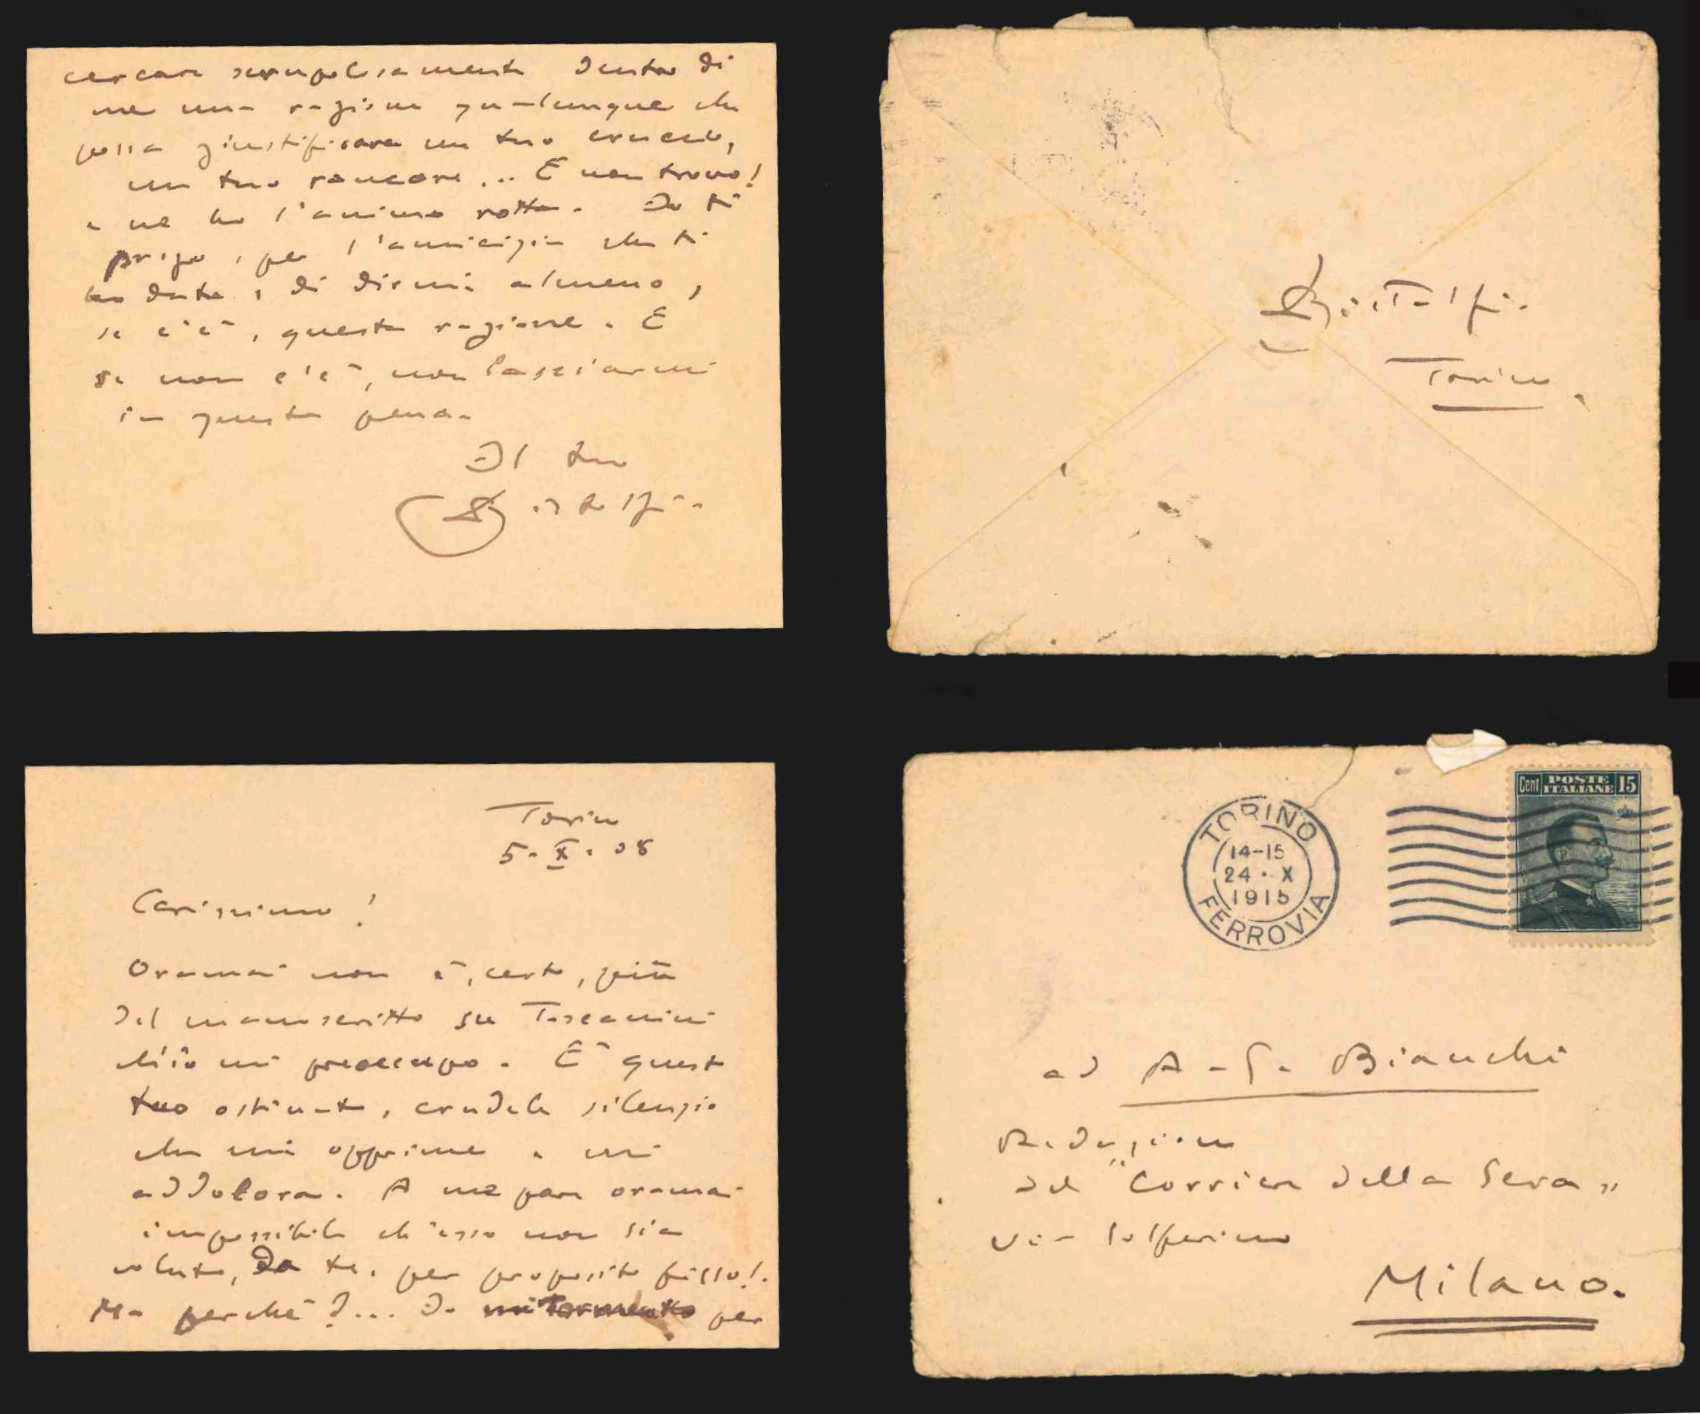 lungo biglietto autografo firmato inviato ad augusto guido bianchi datato 5 ottobre 1908